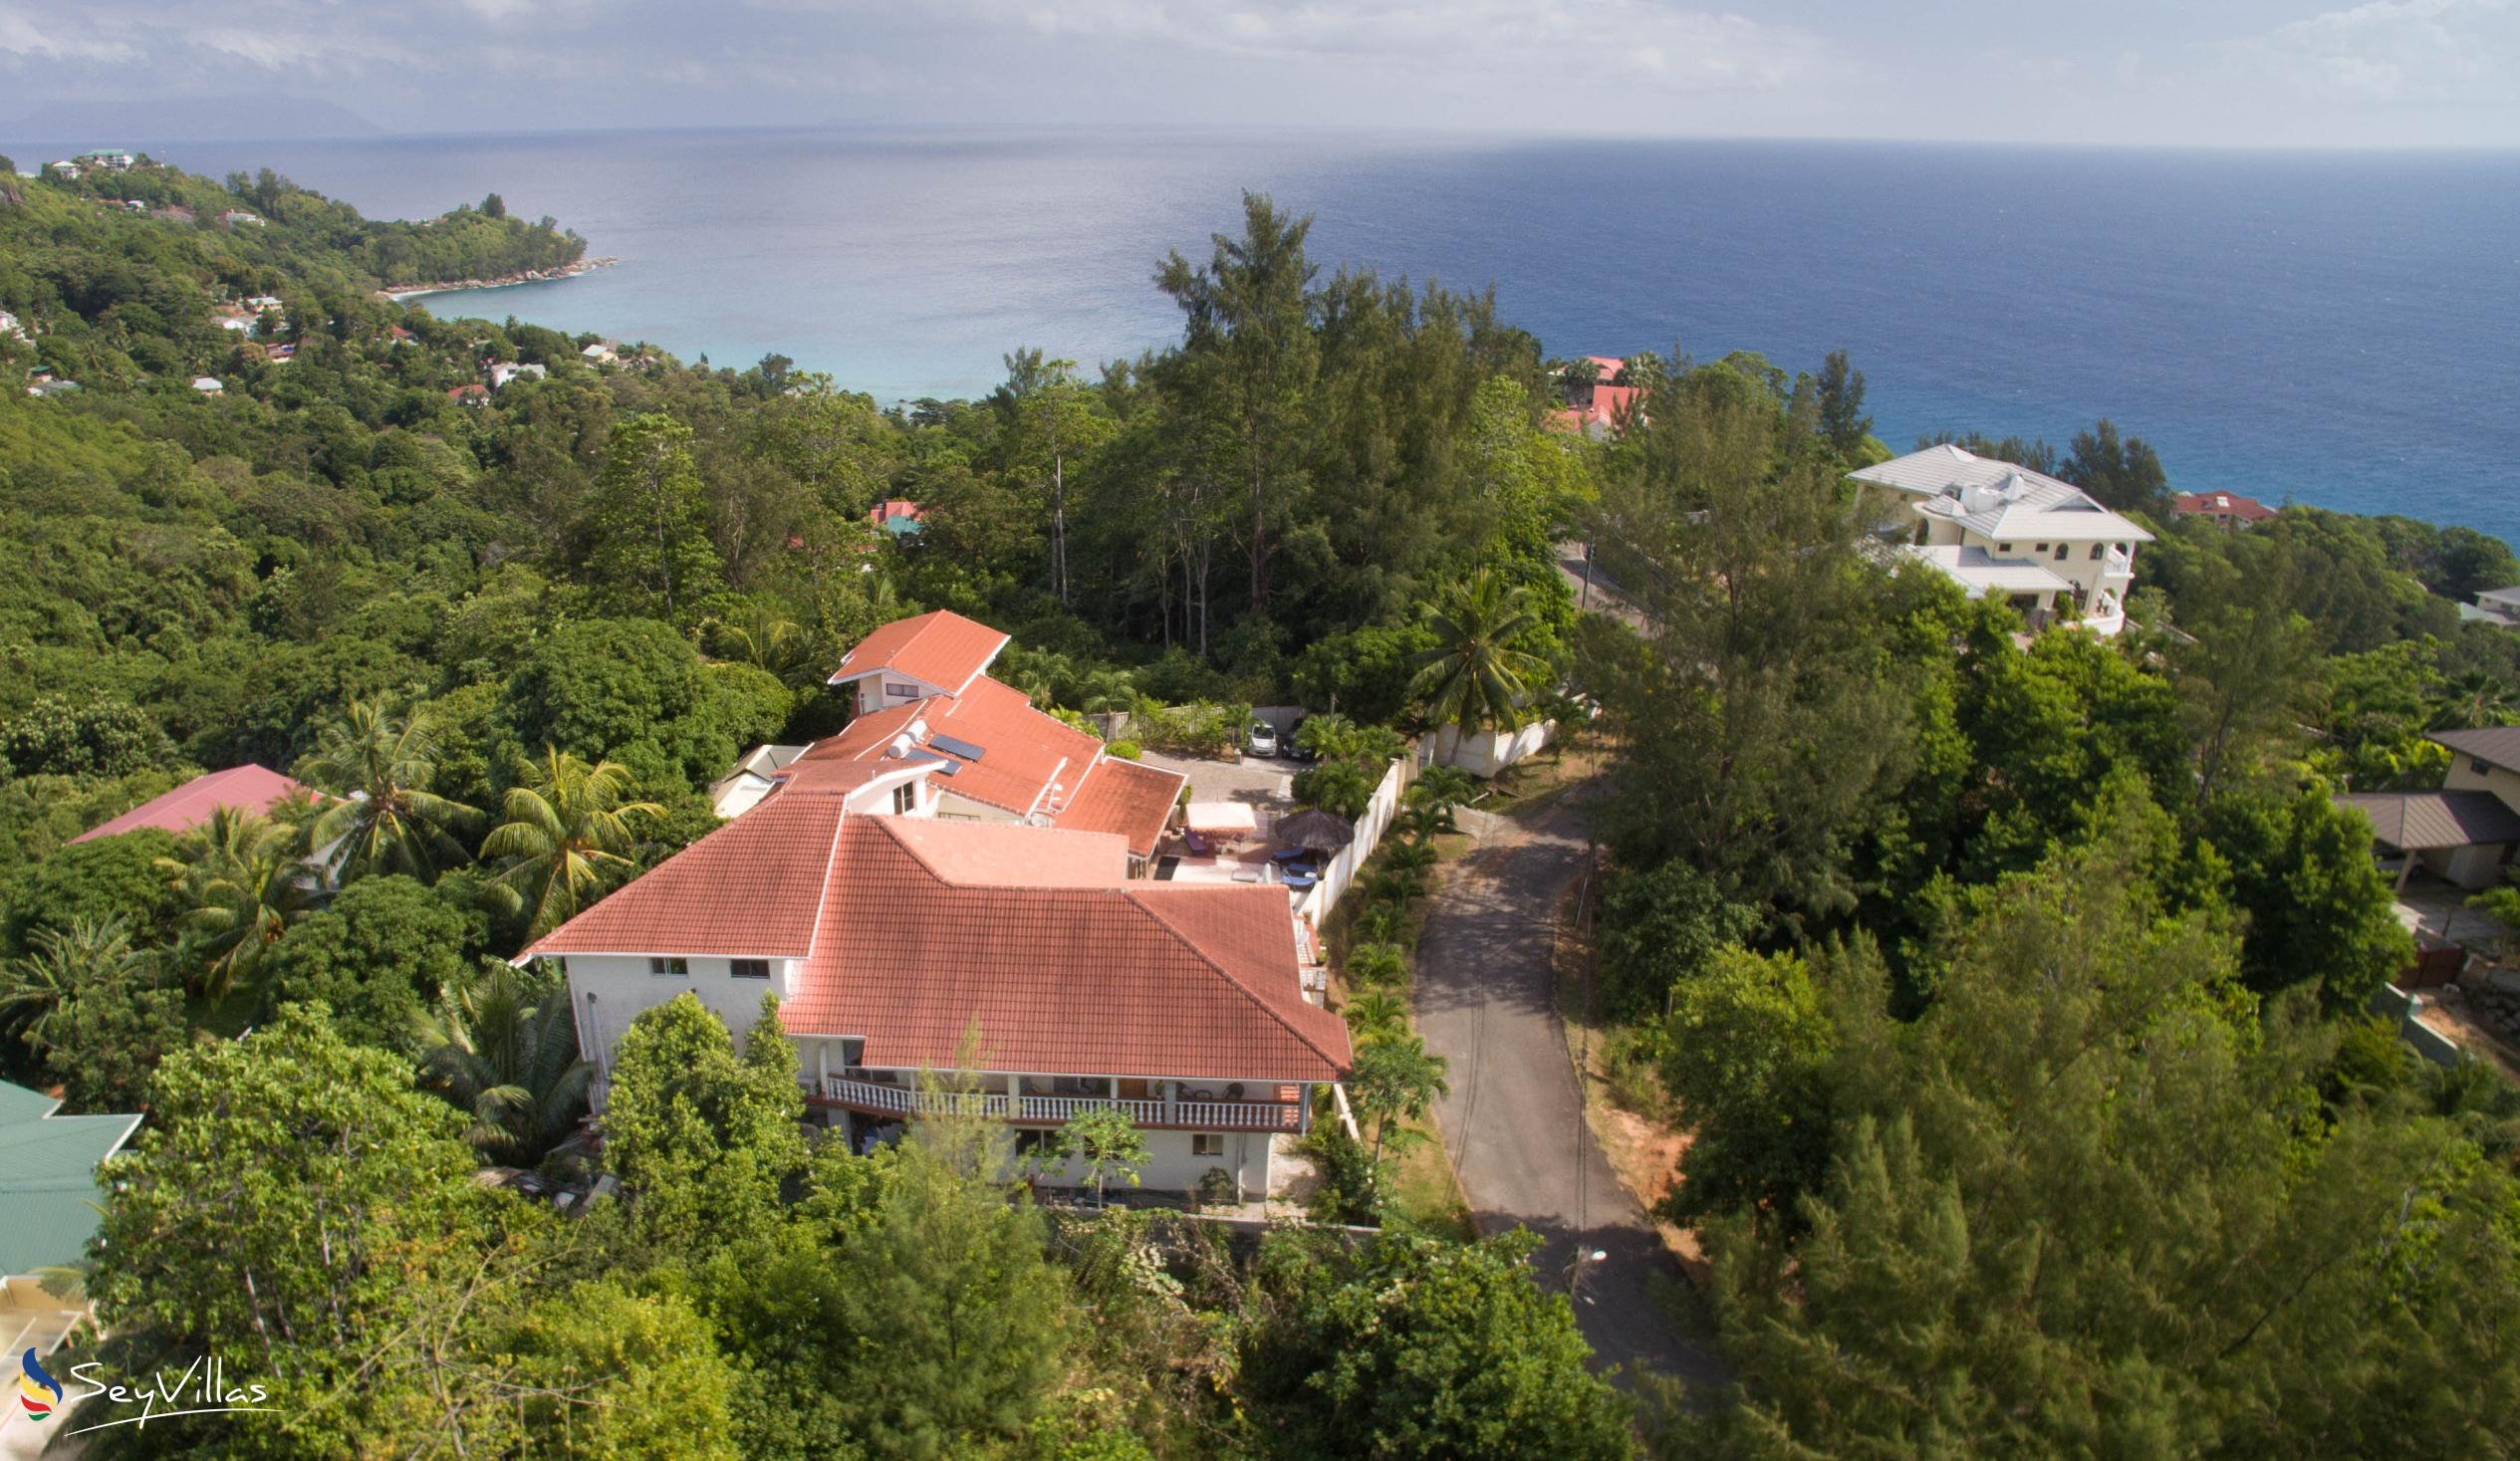 Foto 3: Carana Hilltop Villa - Esterno - Mahé (Seychelles)